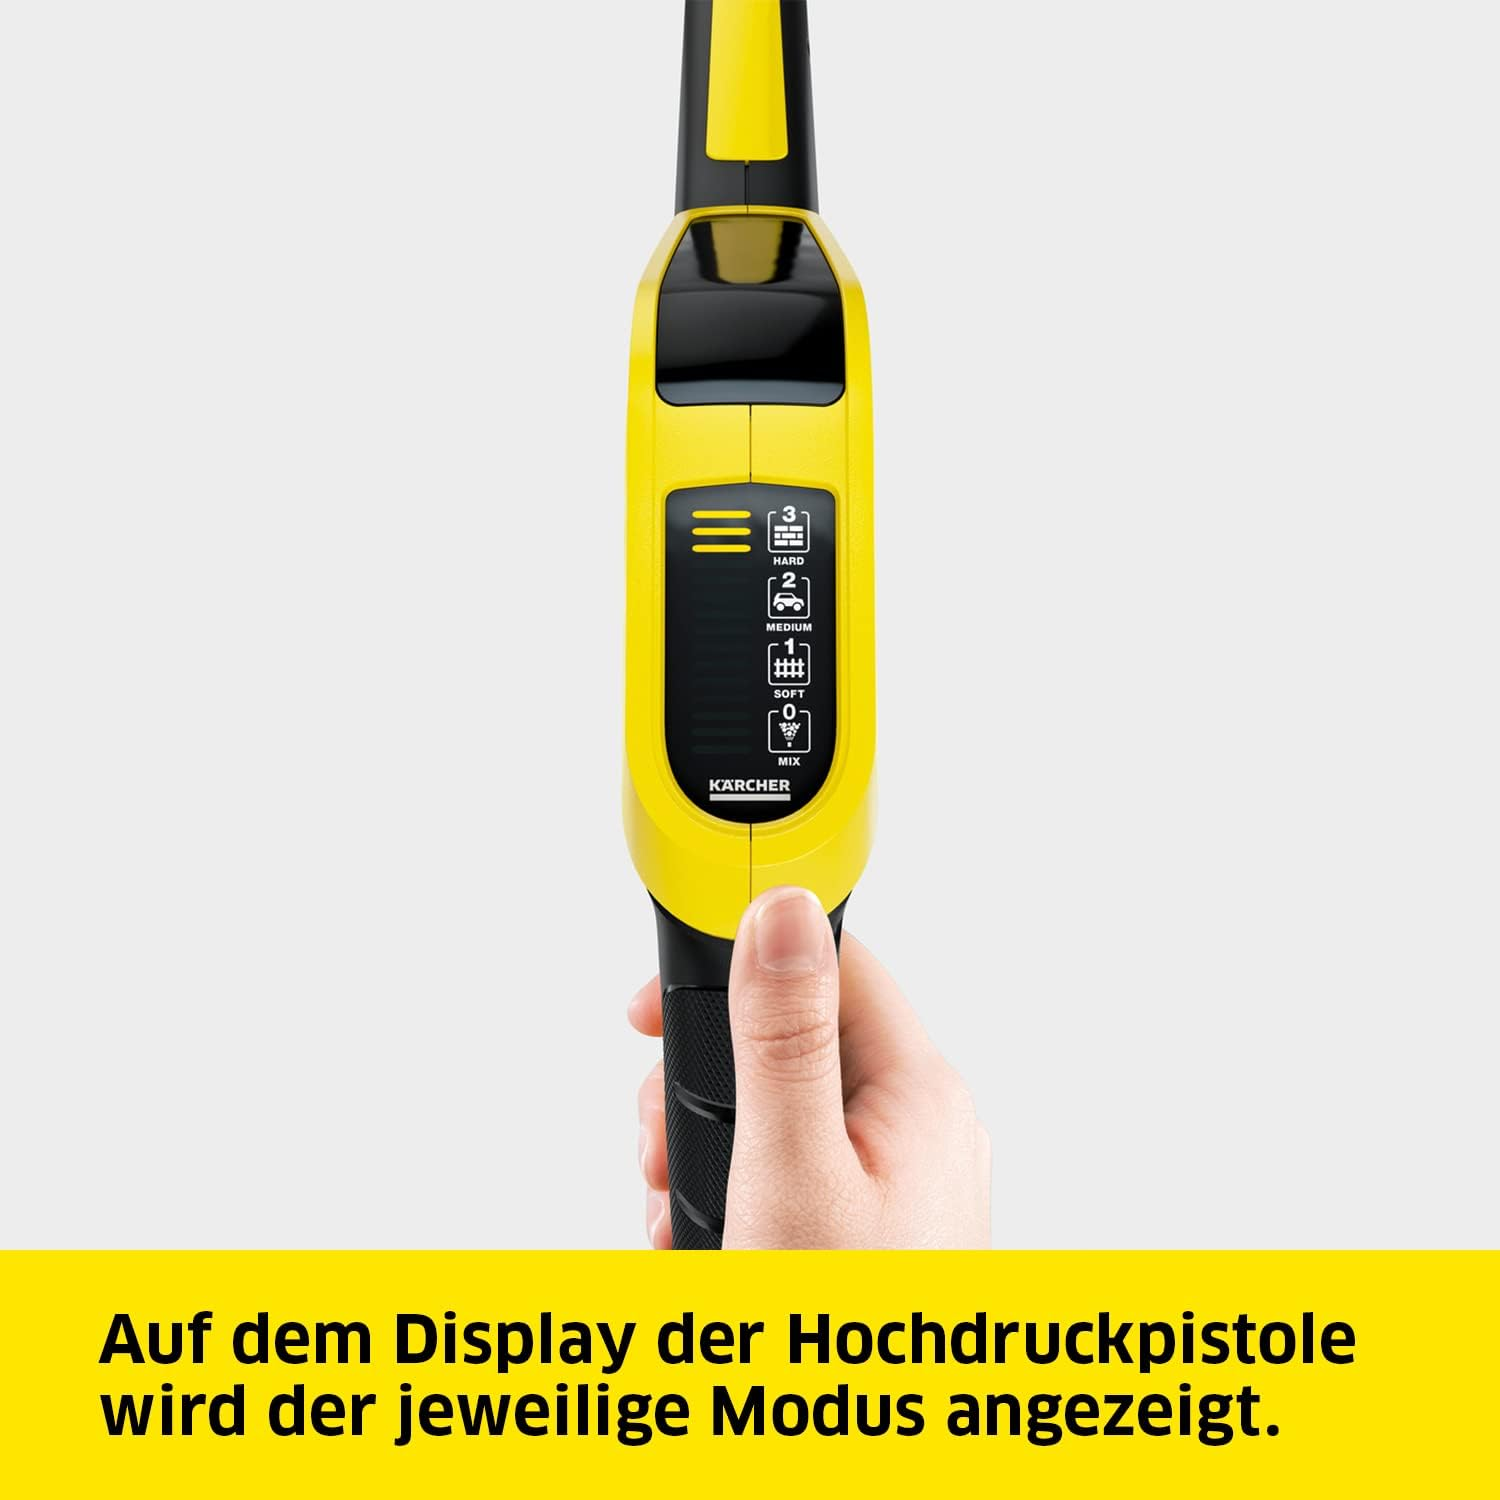 KÄRCHER K 5 Premium Power yellow Hochdruckreiniger, Control